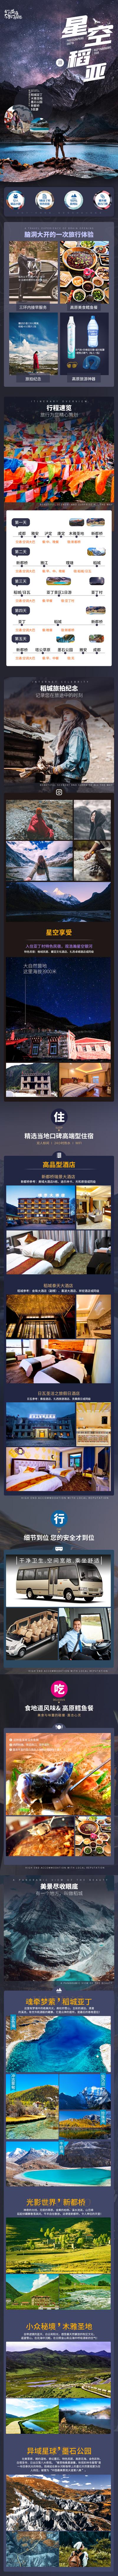 南门网 广告 电商 长图 旅游 人物 美食 风景 酒店 旅行 星空 稻亚